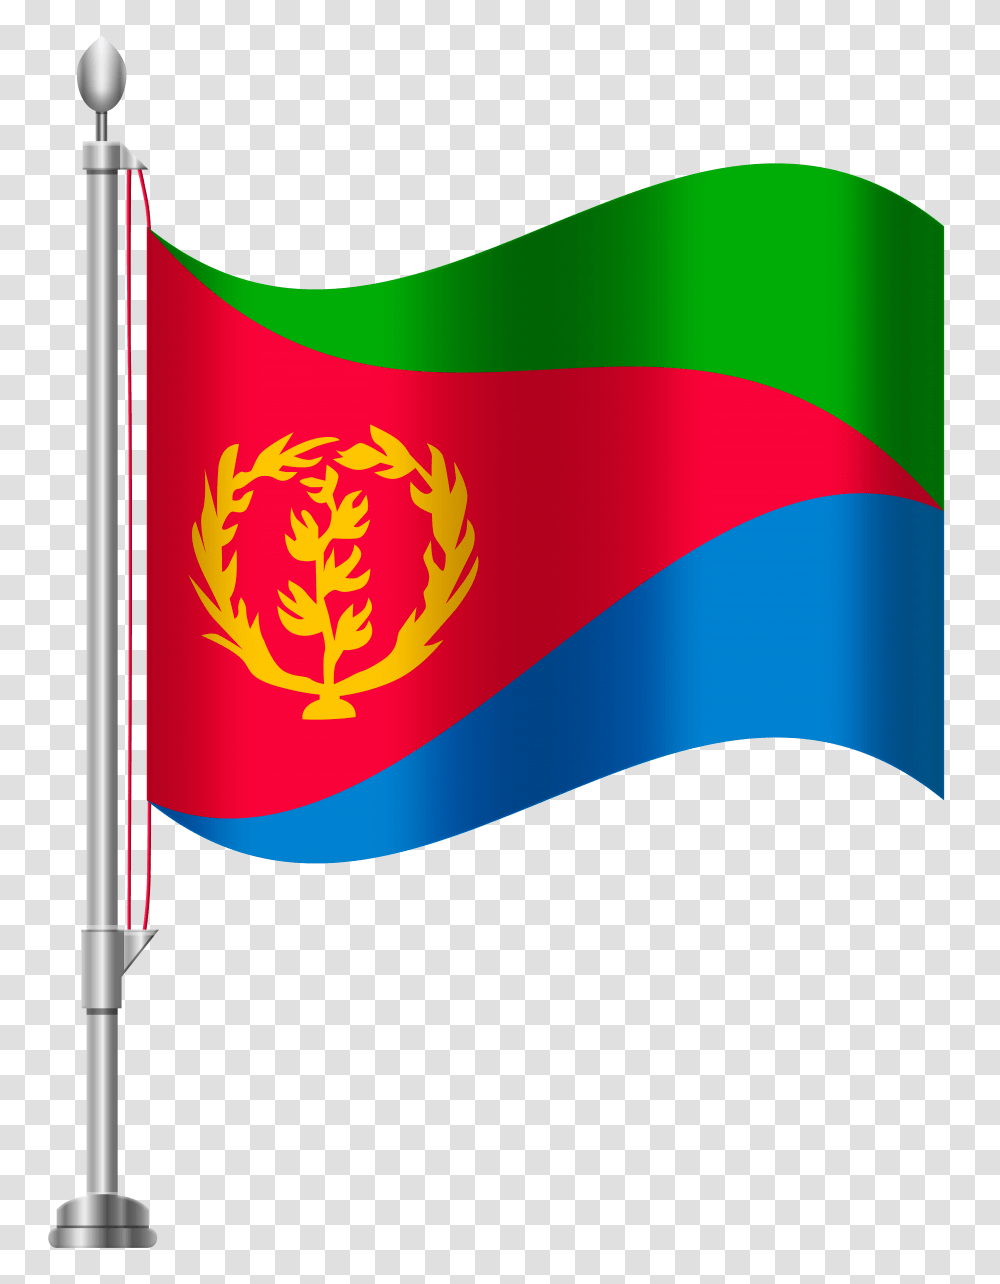 Eritrea Flag Clip Art, Logo, Trademark, American Flag Transparent Png